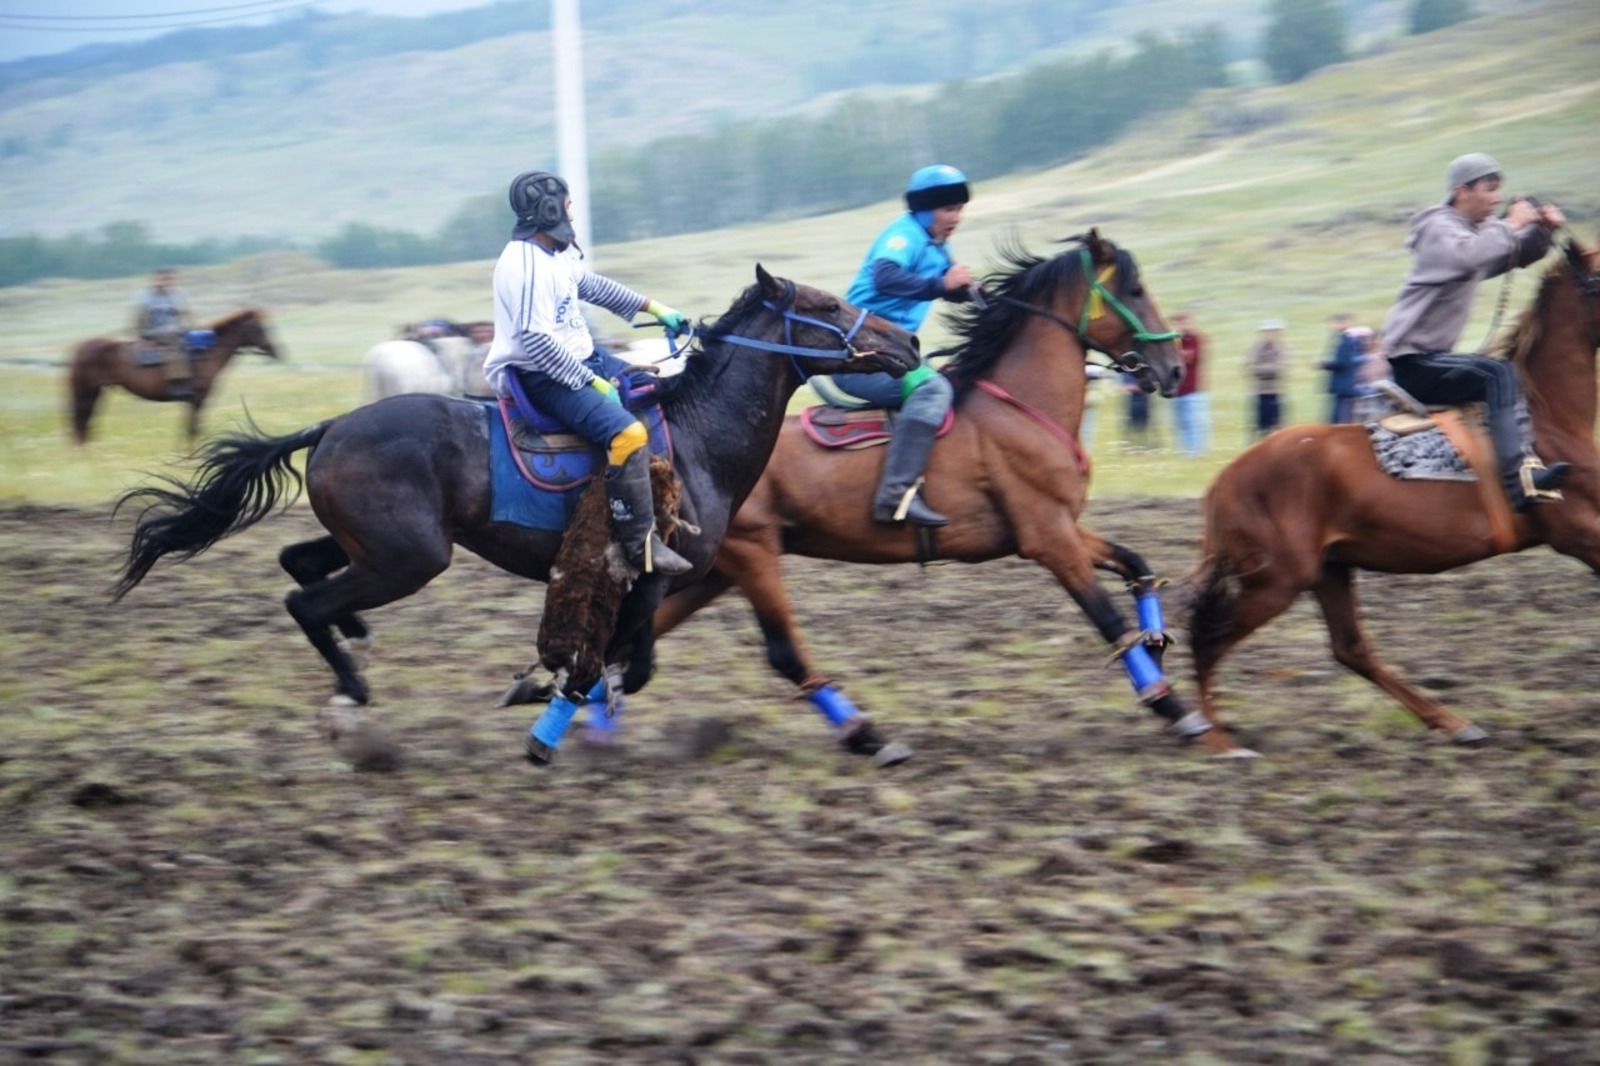 Фестиваль "Башкирской лошадь" начался с козлодрания